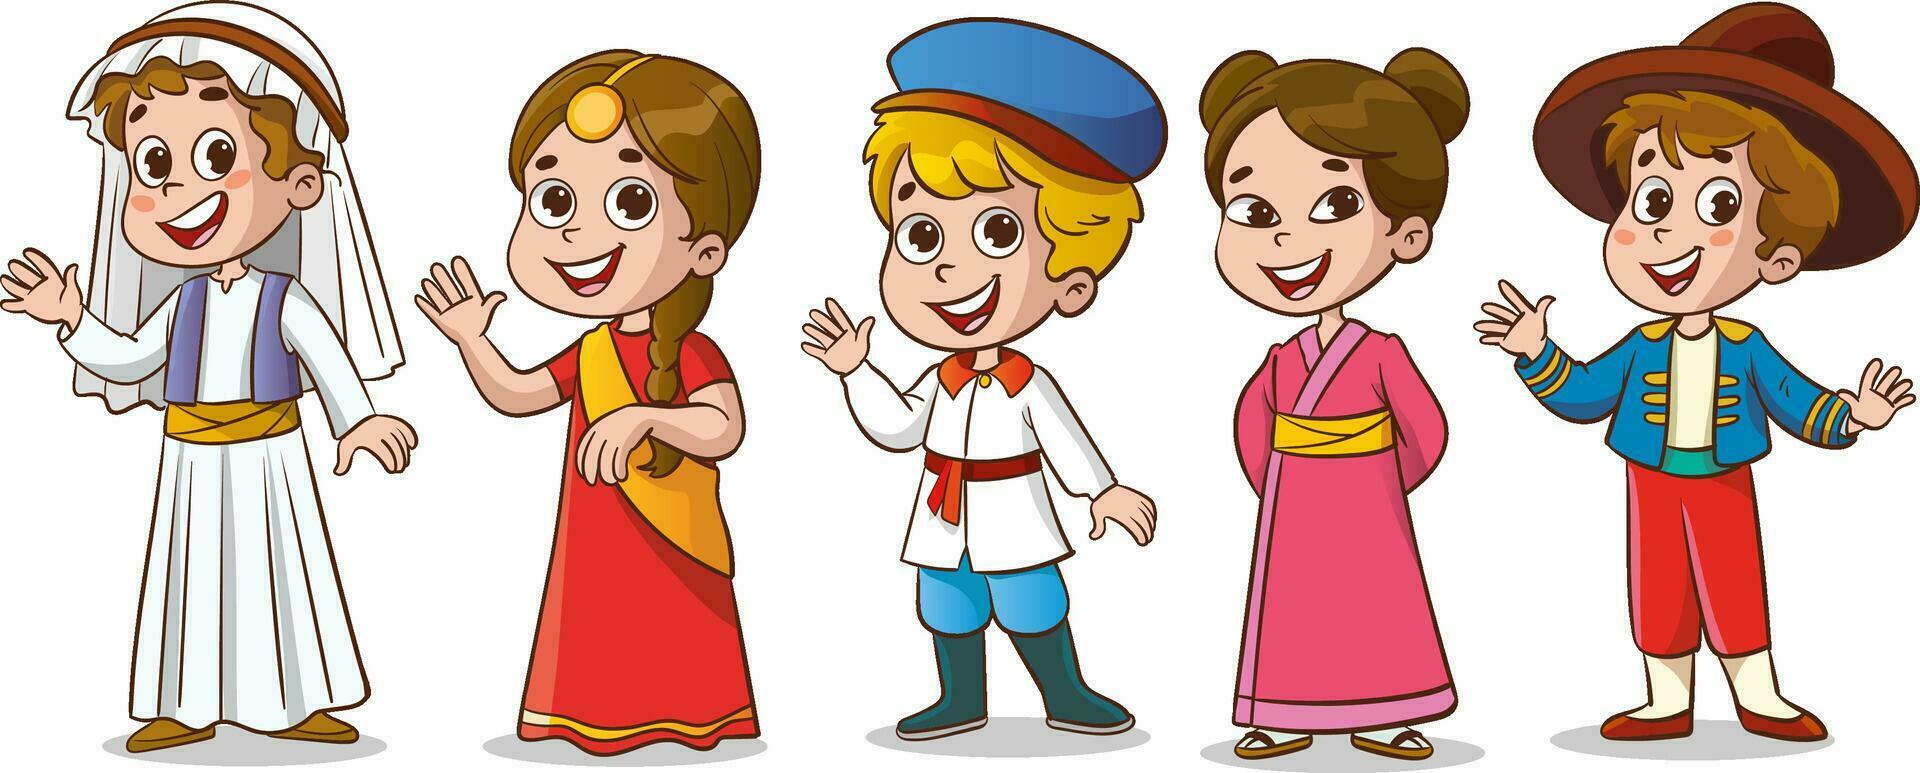 vector illustration of multicultural kids